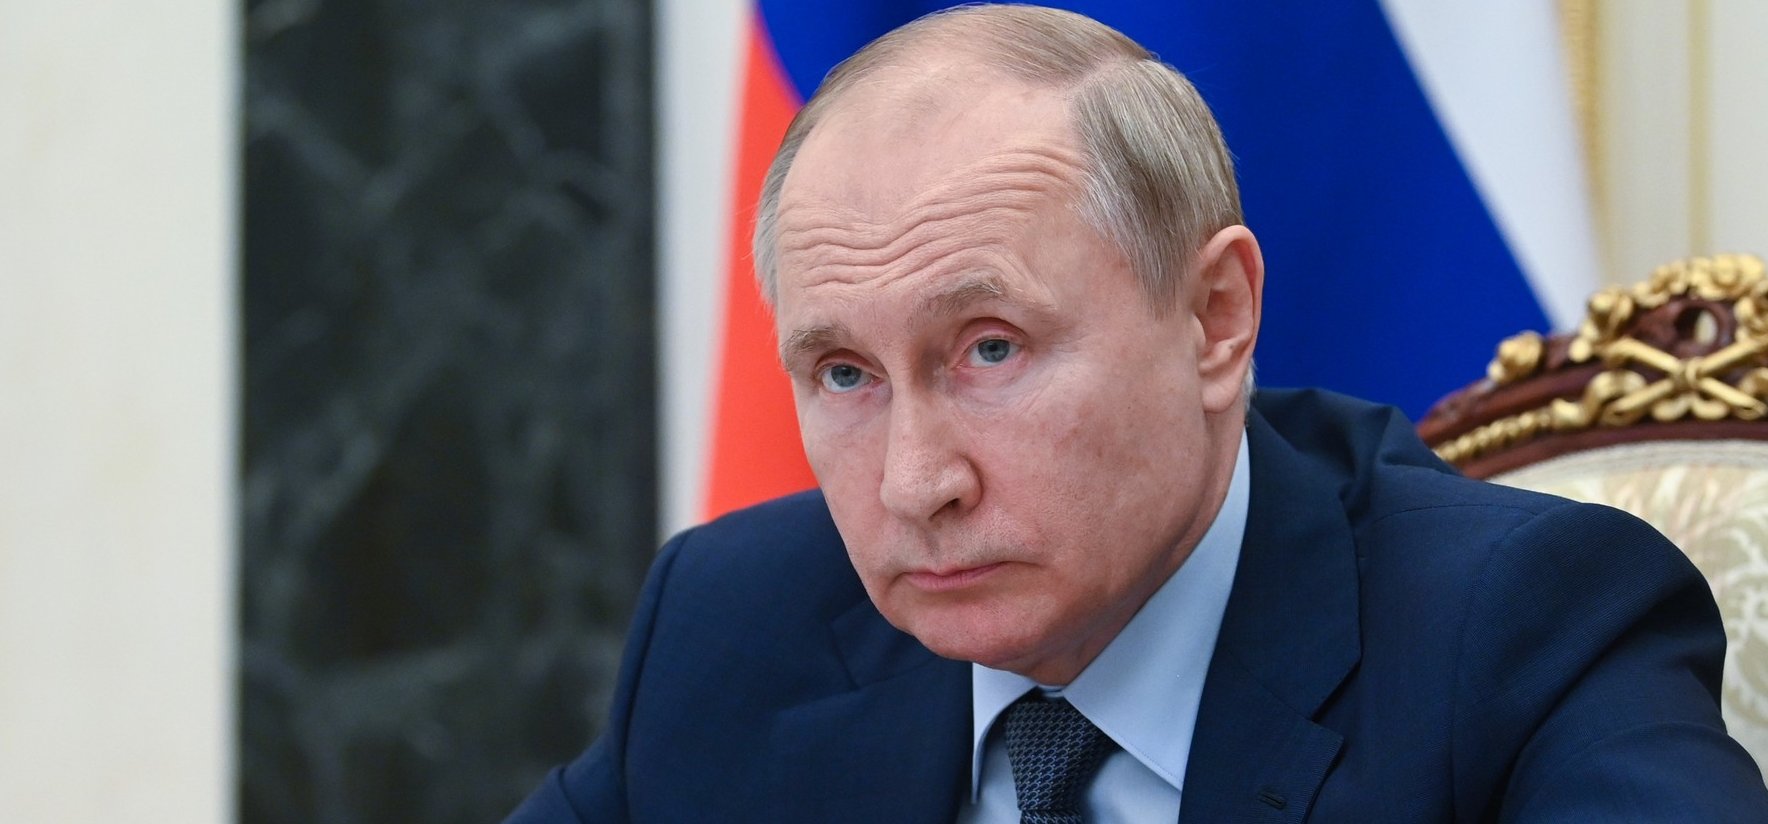 Hátborzongató állítás terjed Putyinról – most ezen röhög a fél internet